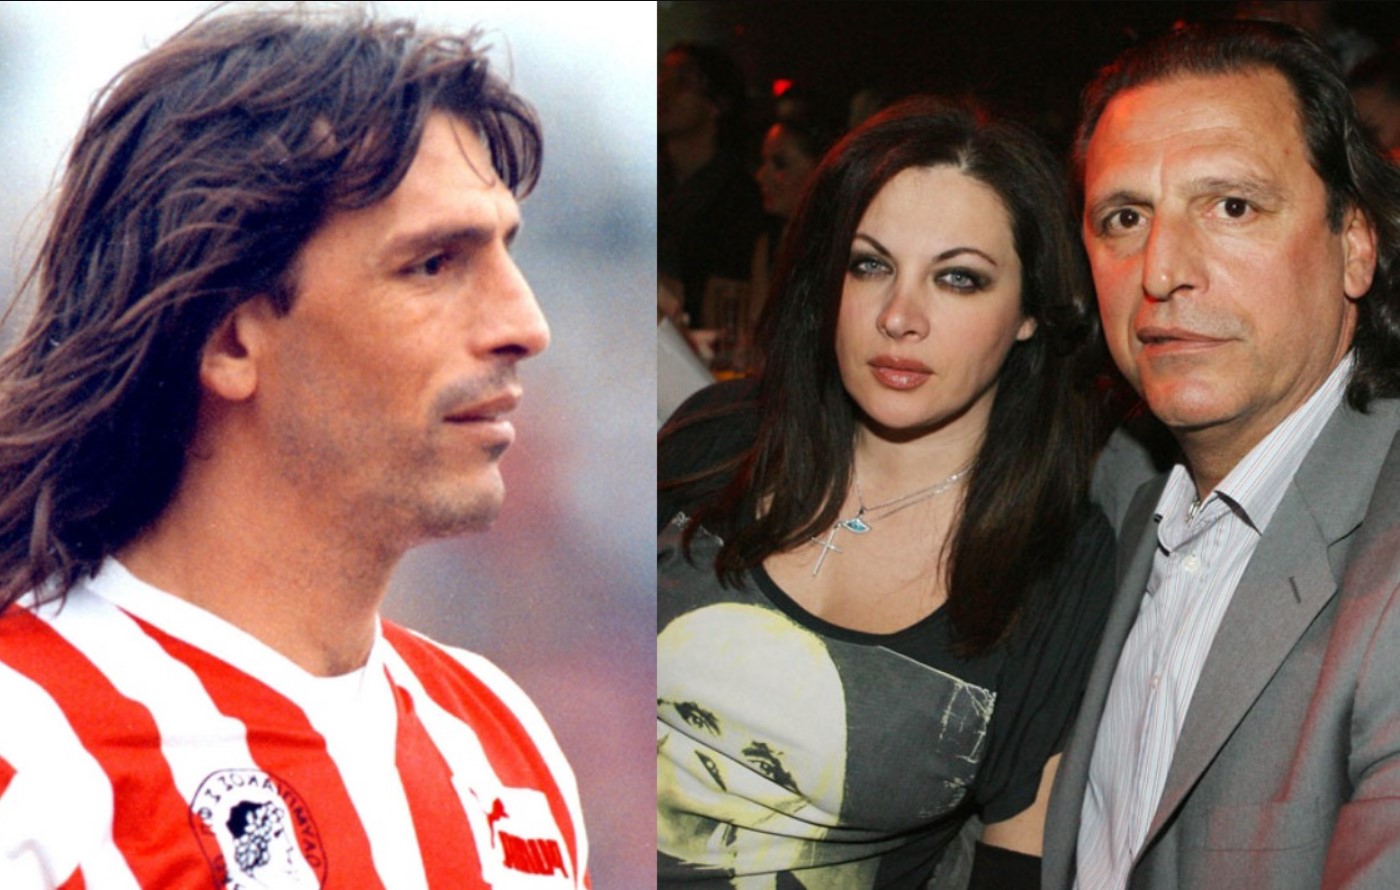 Τάσος Μητρόπουλος: O παλαίμαχος ποδοσφαιριστής έχει γενέθλια σήμερα και η Νένα Χρονοπούλου έχει πολλά να αποκαλύψει!